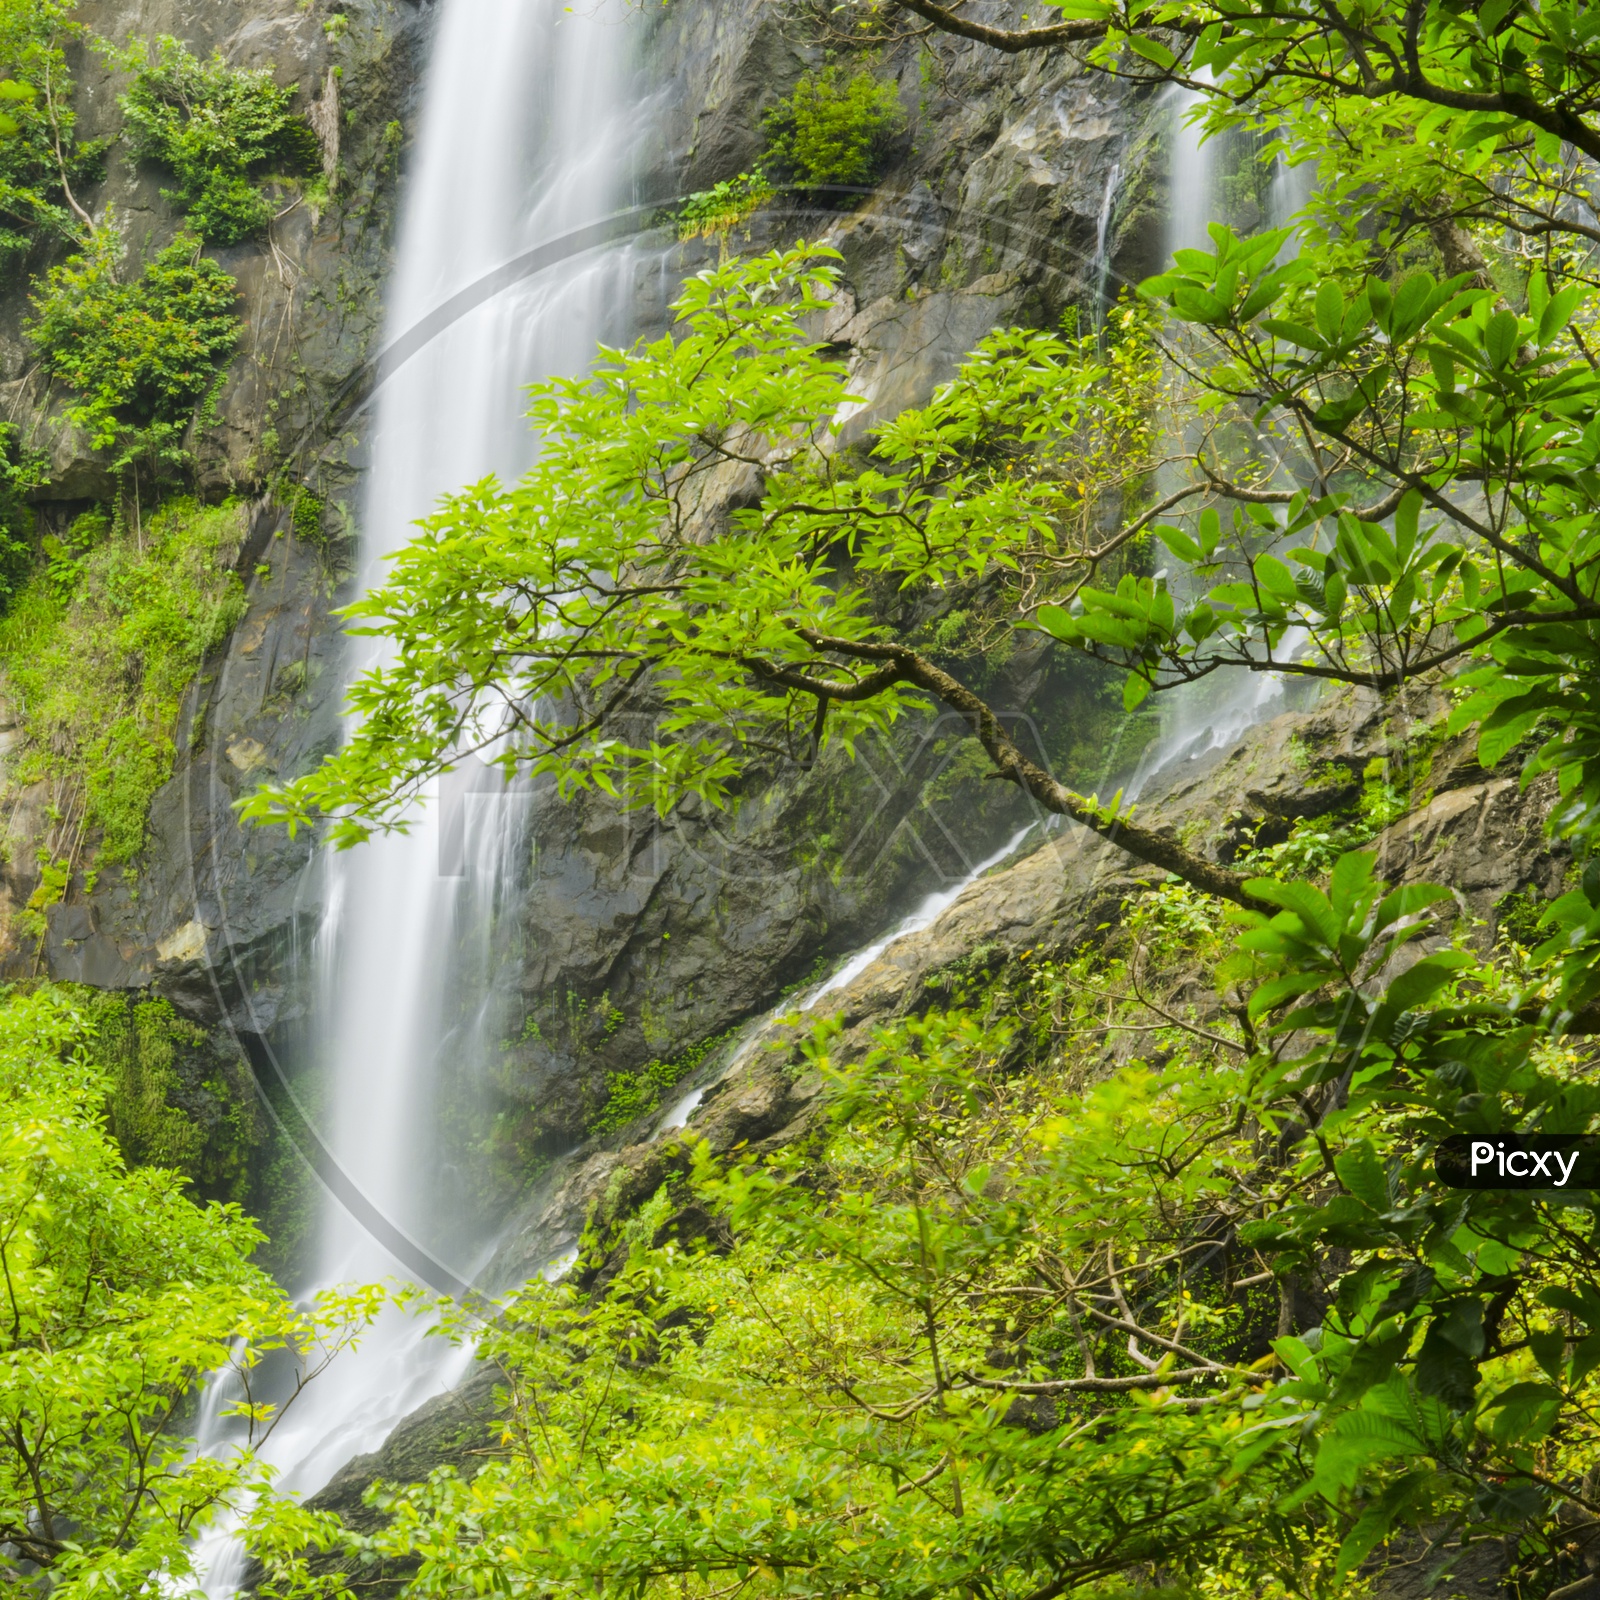 Klong lan waterfall of Kamphangpetch Thailand